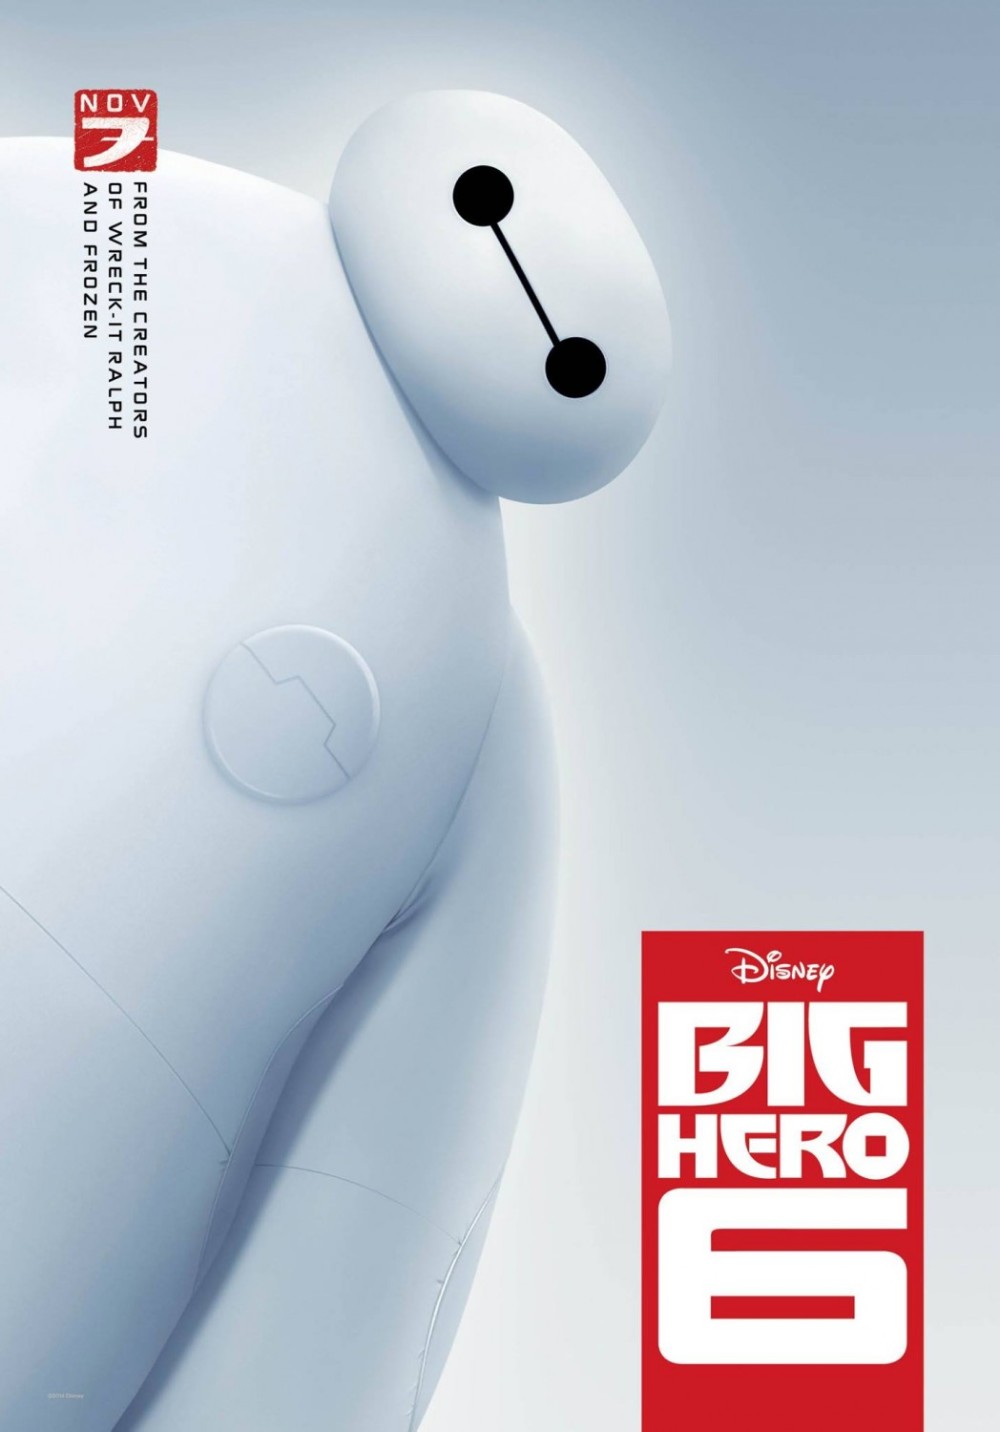 Twee nieuwe posters 'Big Hero 6'